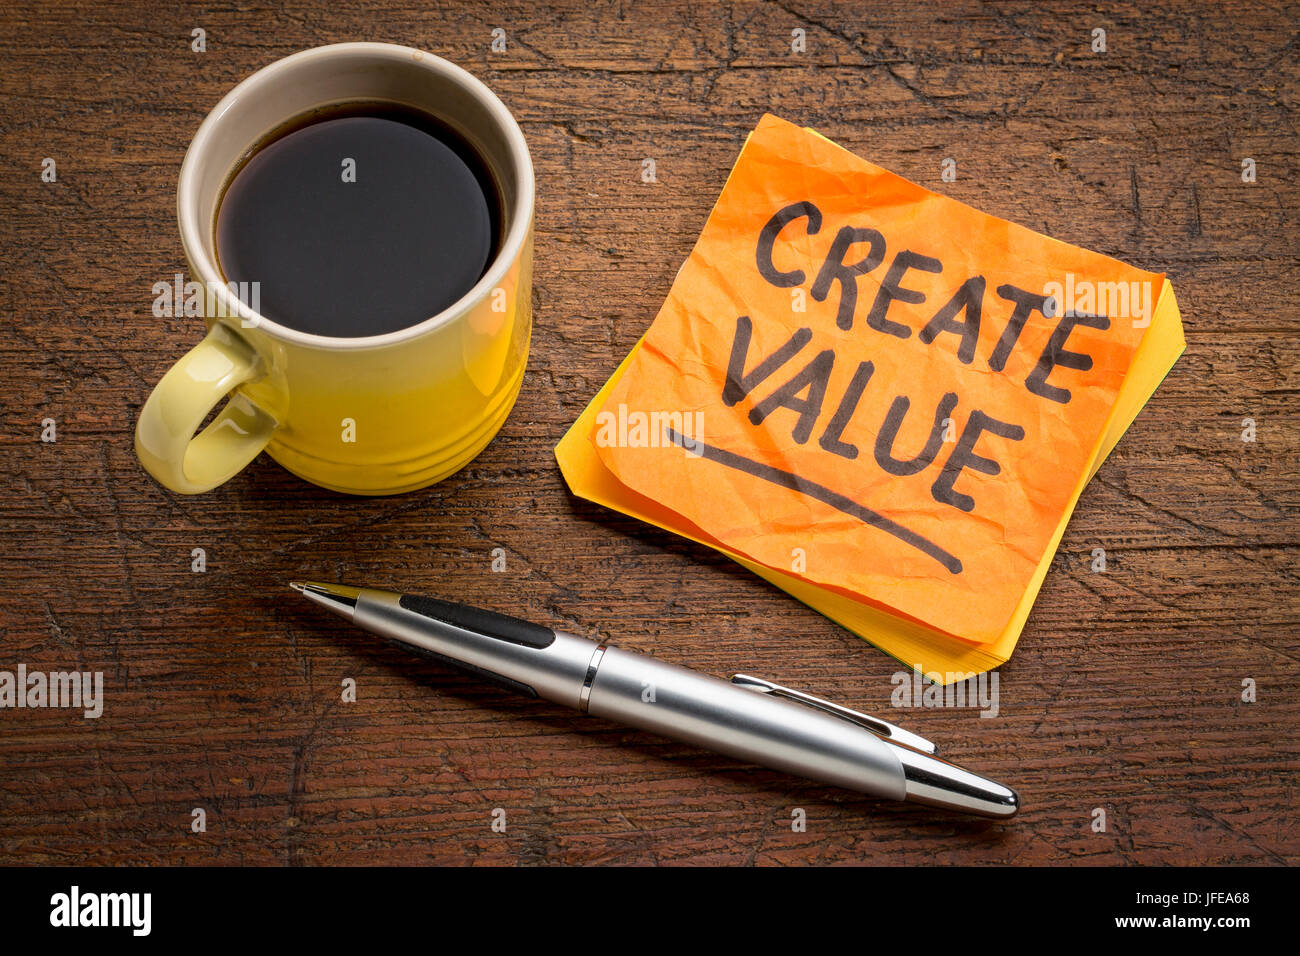 Creare valore di promemoria o consigli - ispirazione concetto - scrittura su una nota adesiva con una tazza di caffè Foto Stock